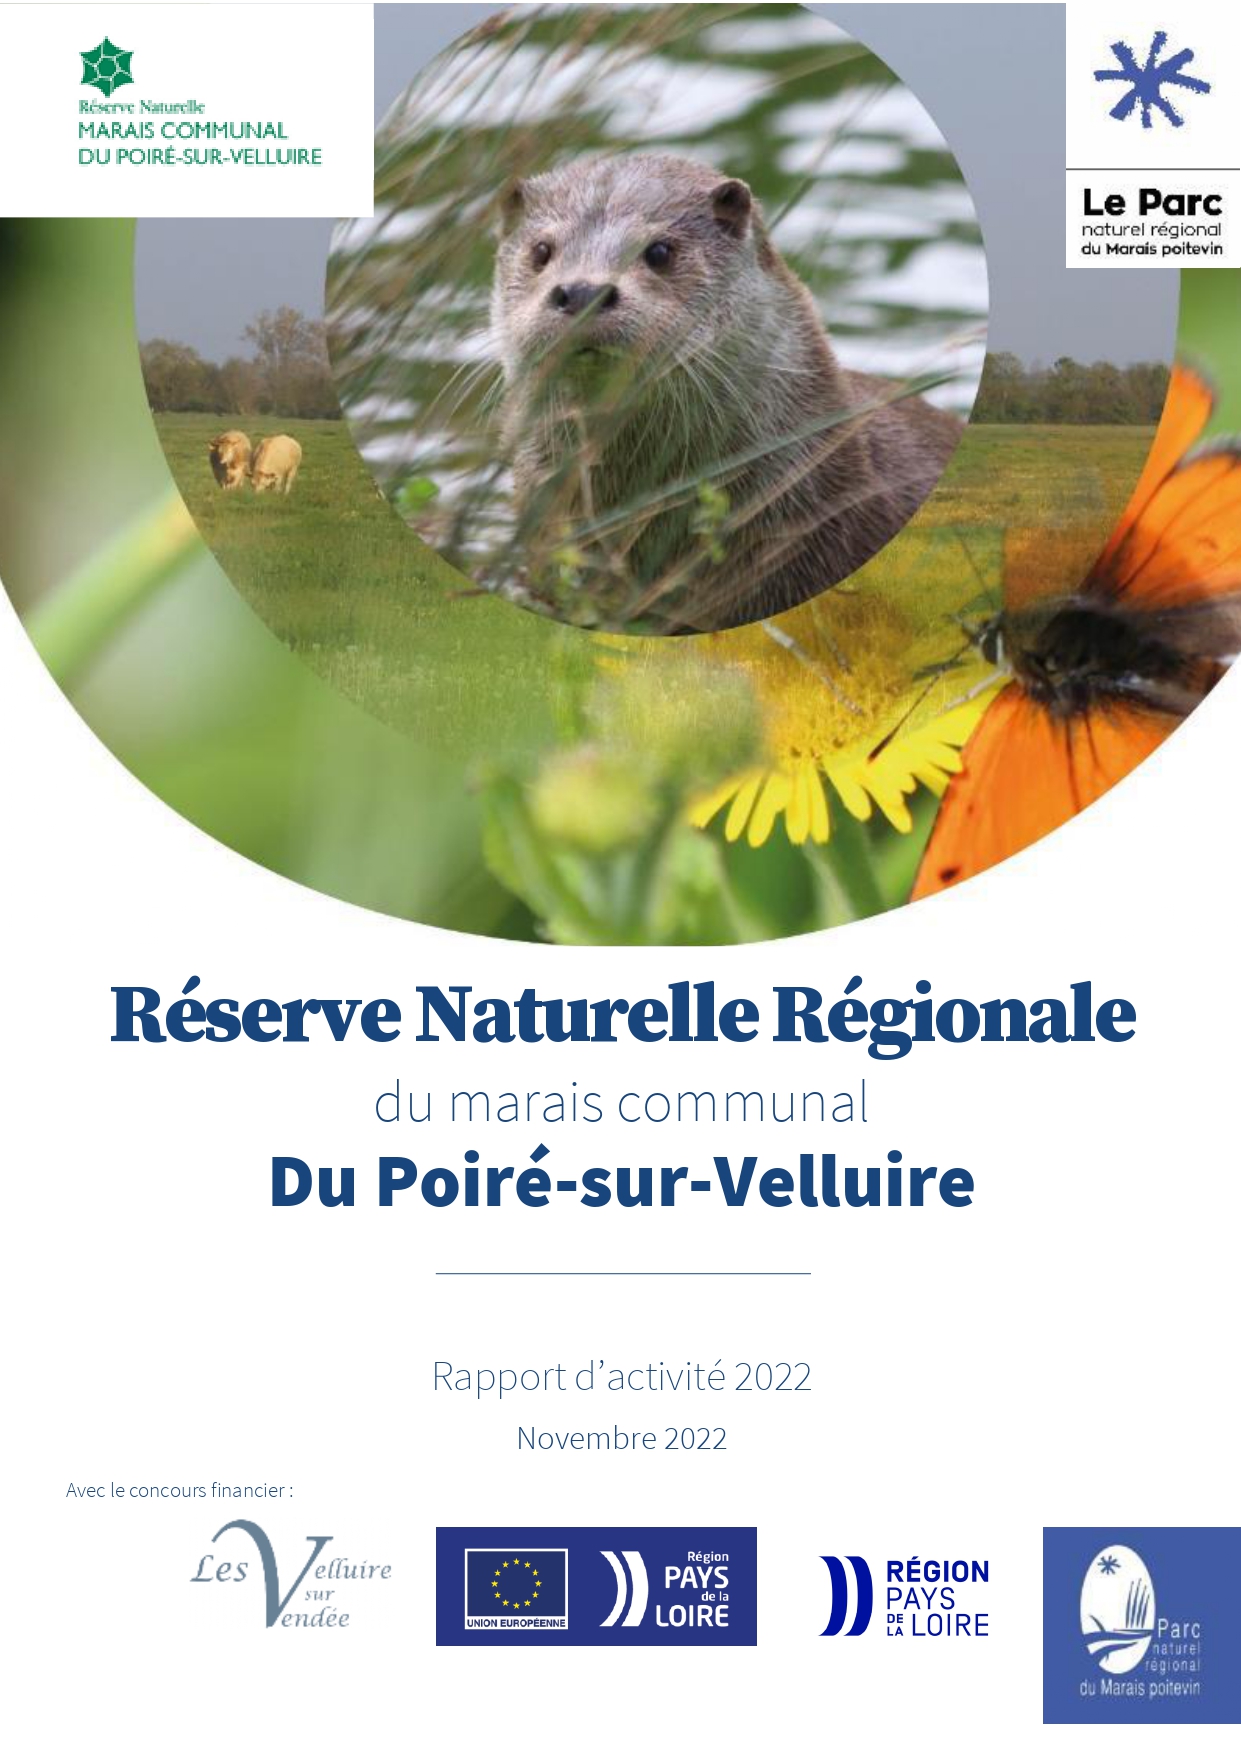 Page de couverture - Rapport d'activité 2022 de la RNR du Marais communal du Poiré-sur-Velluire